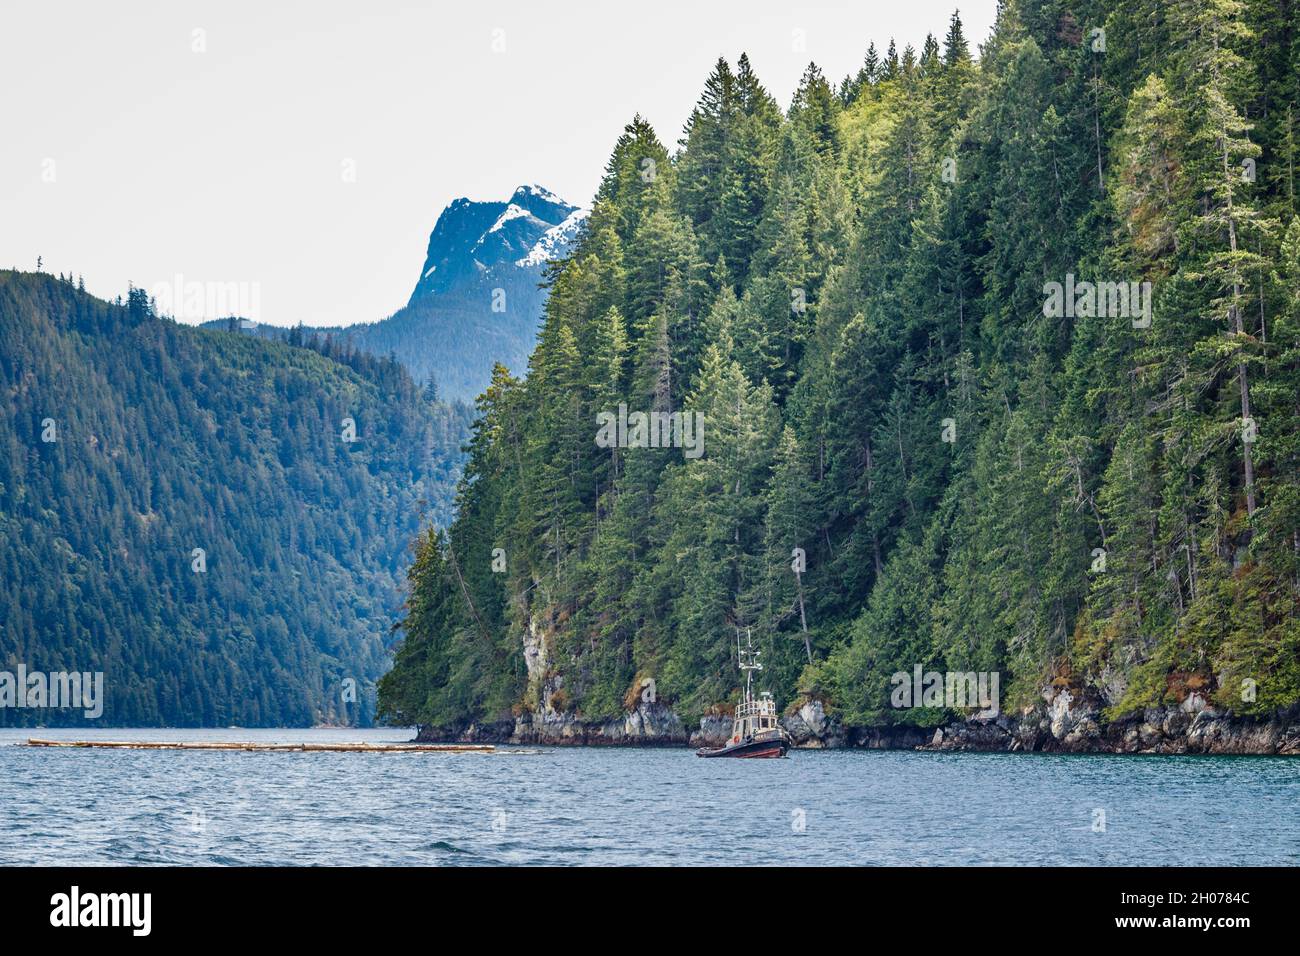 Una lancha remolcada un boom de troncos junto a una costa boscosa en un estrecho paso costero, con un empinado pico cubierto de nieve en el fondo (Columbia Británica). Foto de stock